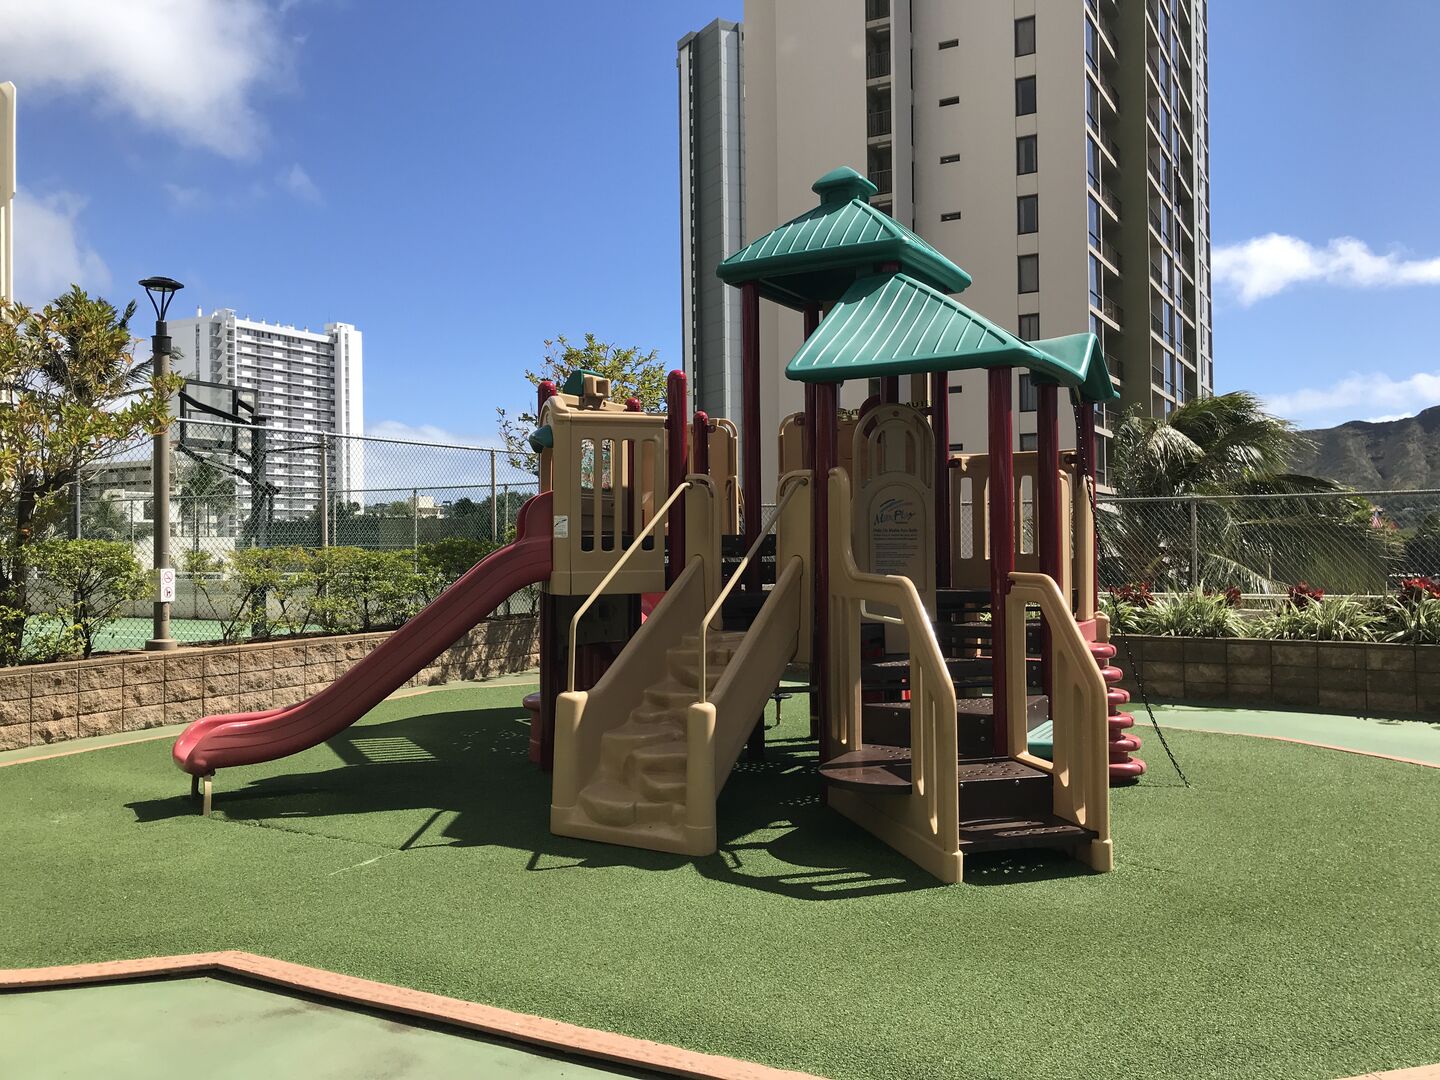 Children's playground on 6th floor recreation deck